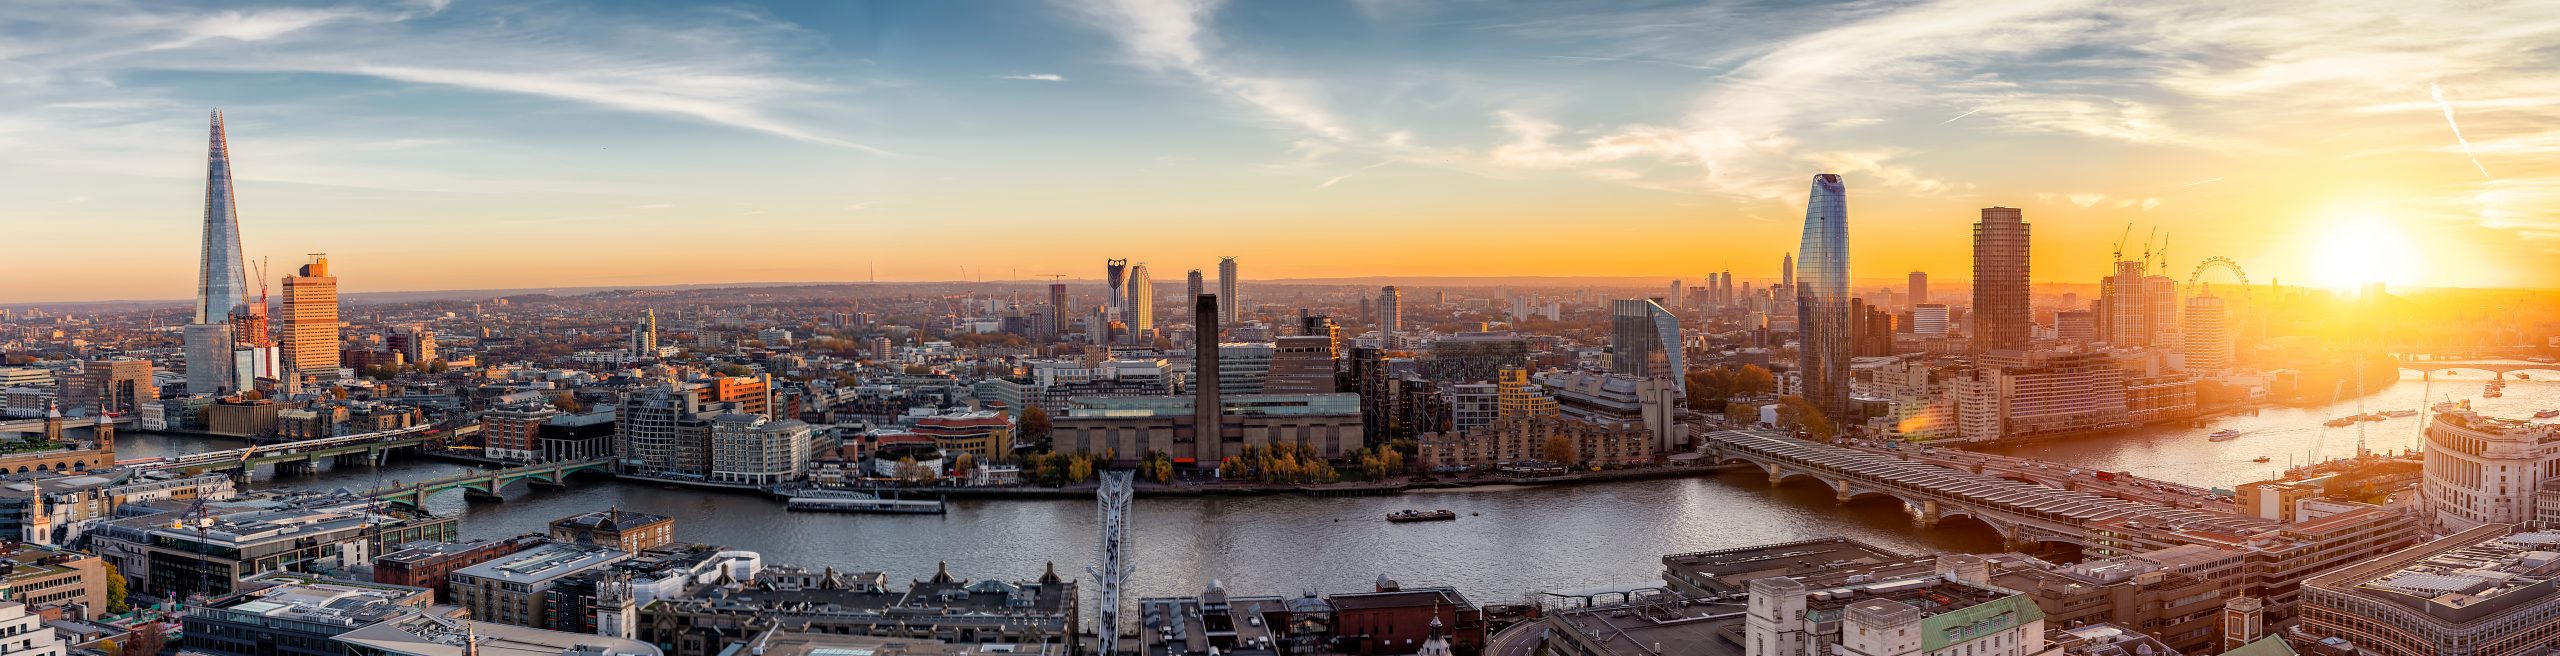 London skyline panoramic view